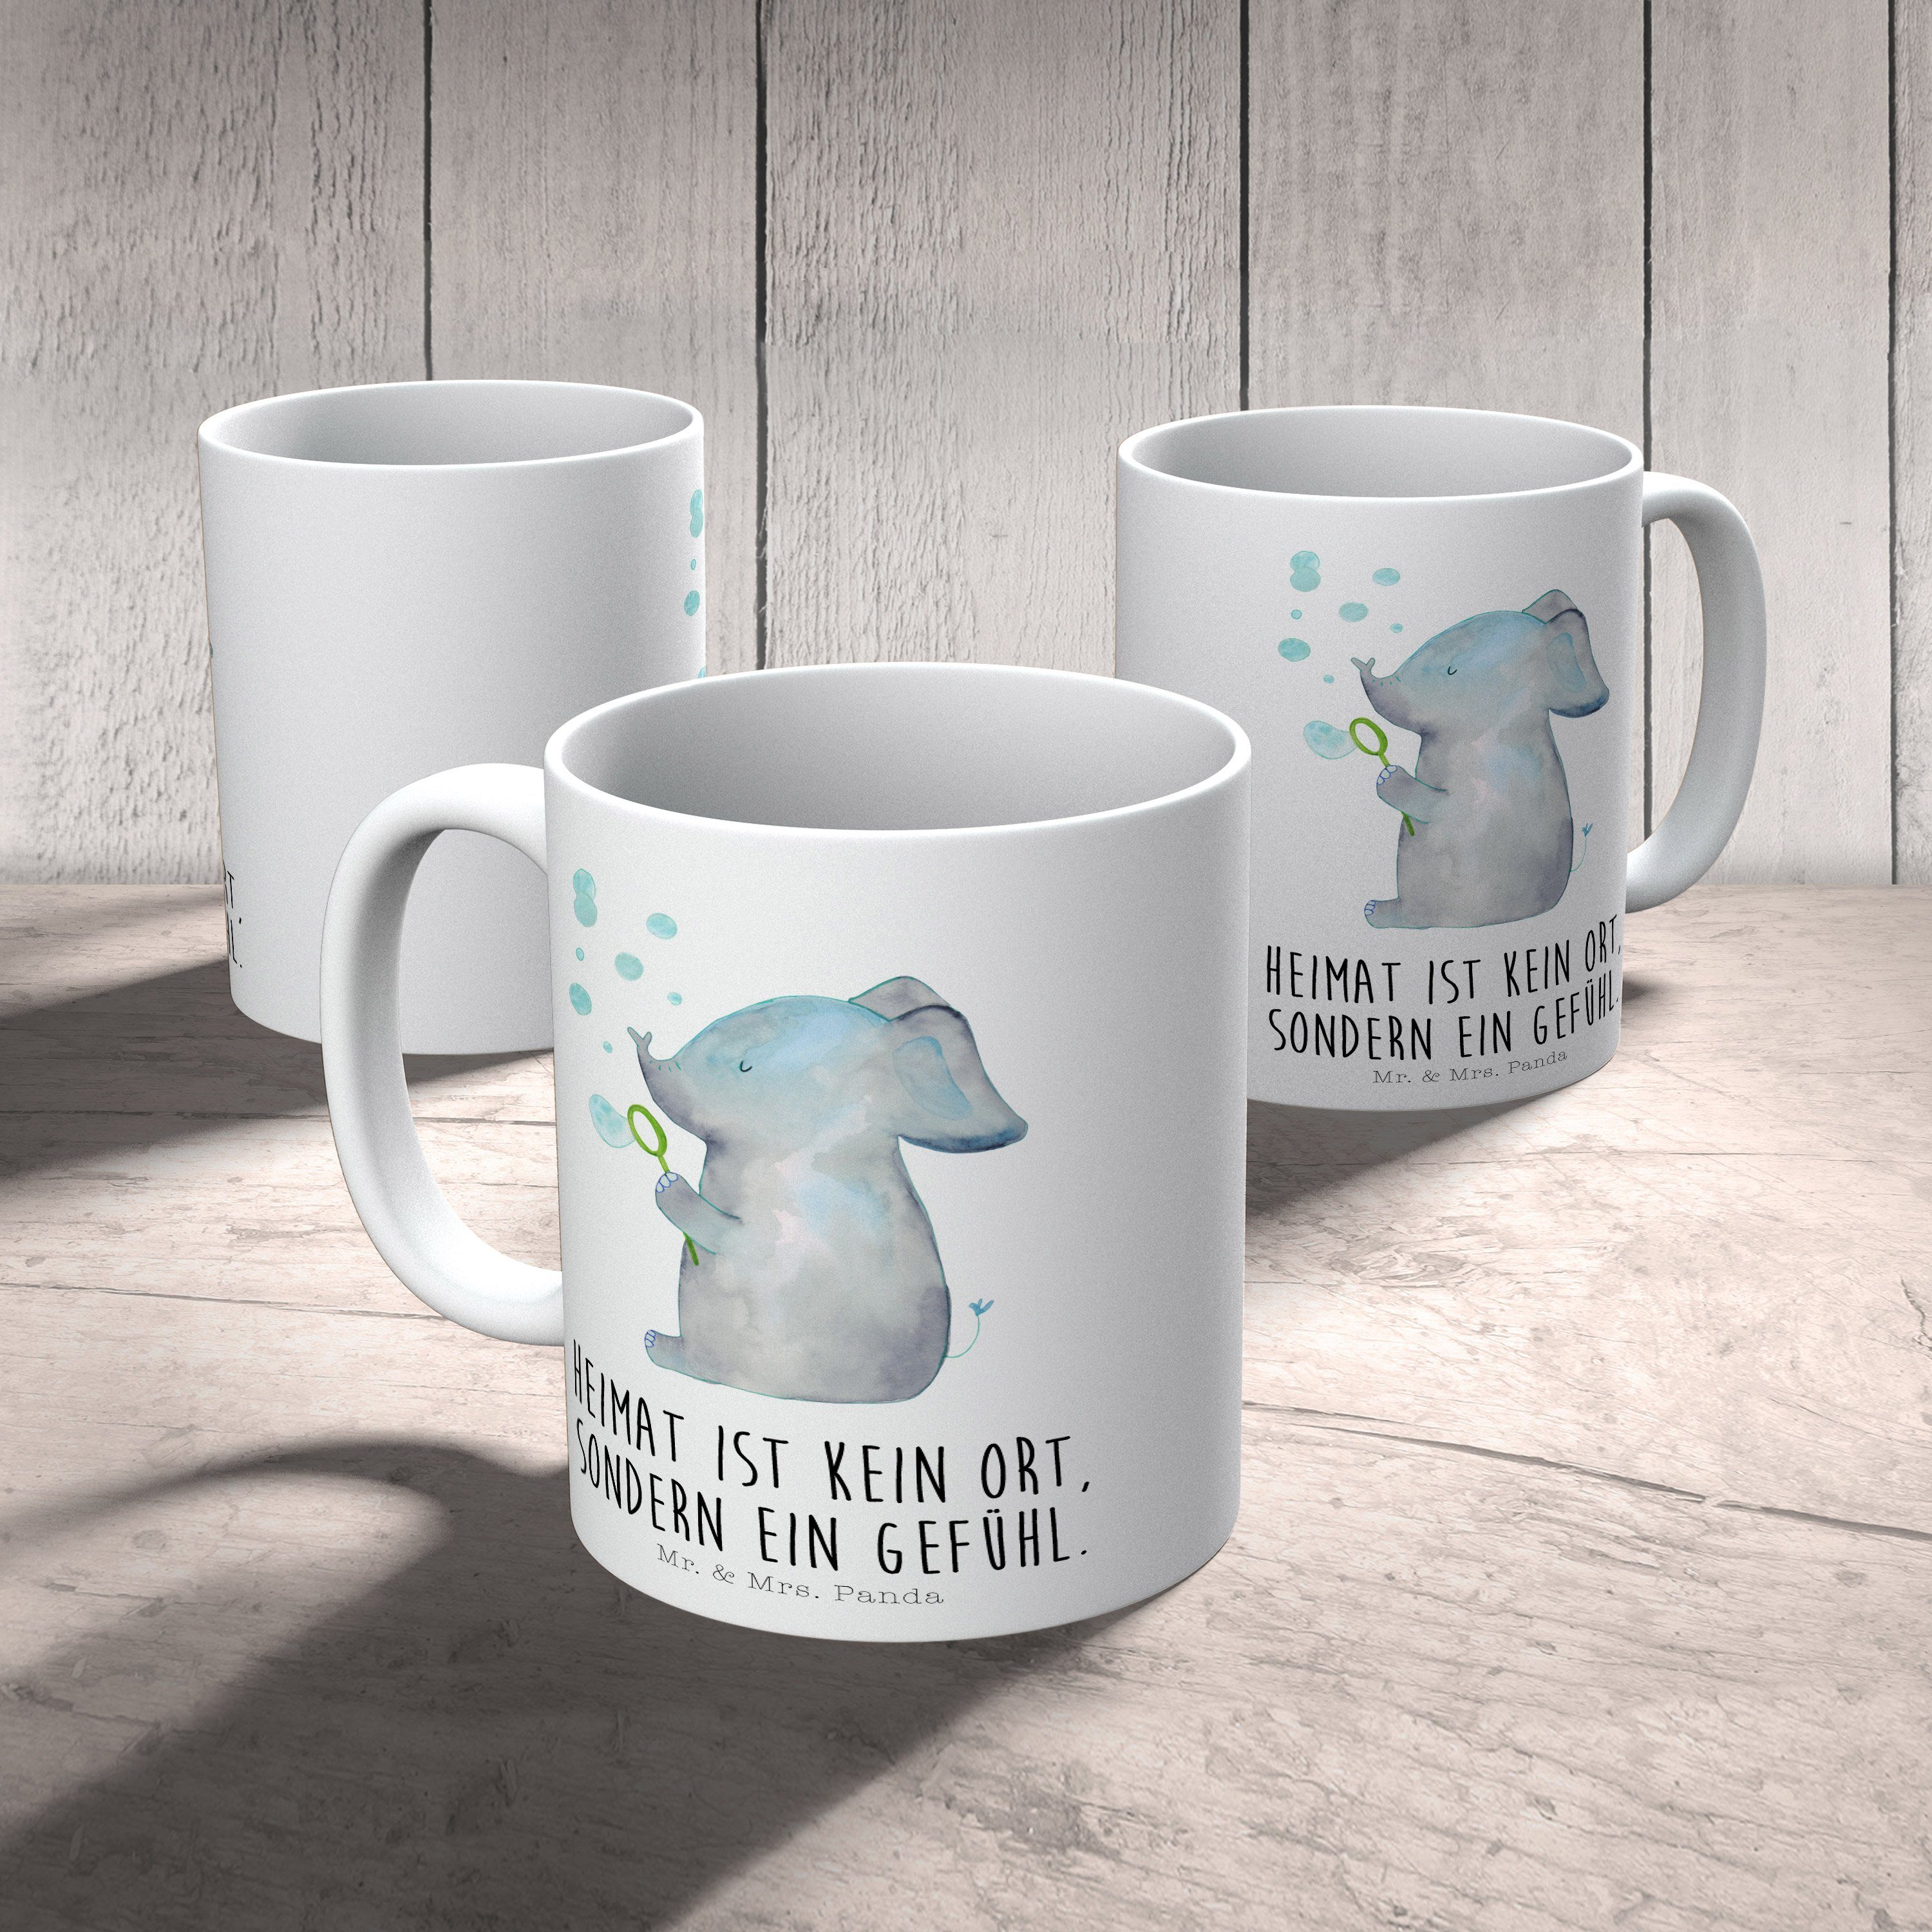 Mr. & Mrs. Panda Tasse Geschenk, Gute - Tiere, Tiermotive, Laune, - Elefant Seifenblasen Weiß Keramik